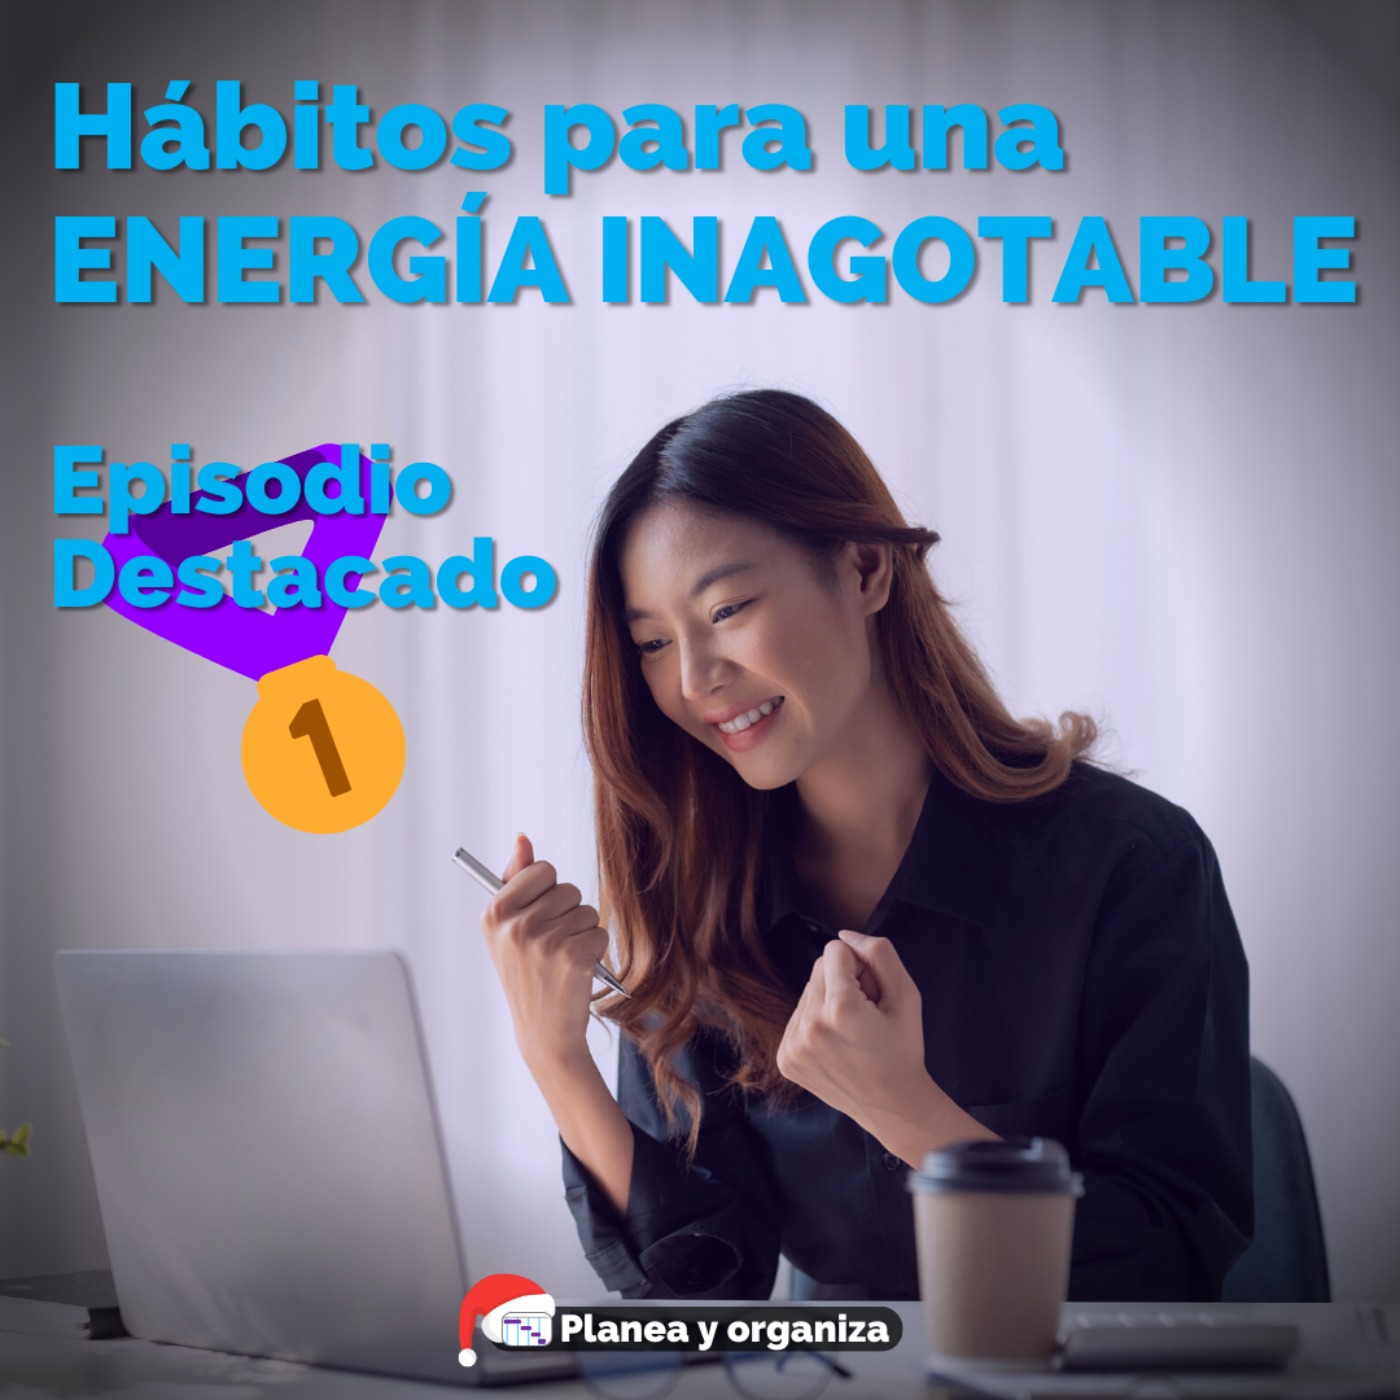 #105 Episodio destacado puesto 1 Hábitos para una energía inagotable - Planea y organiza